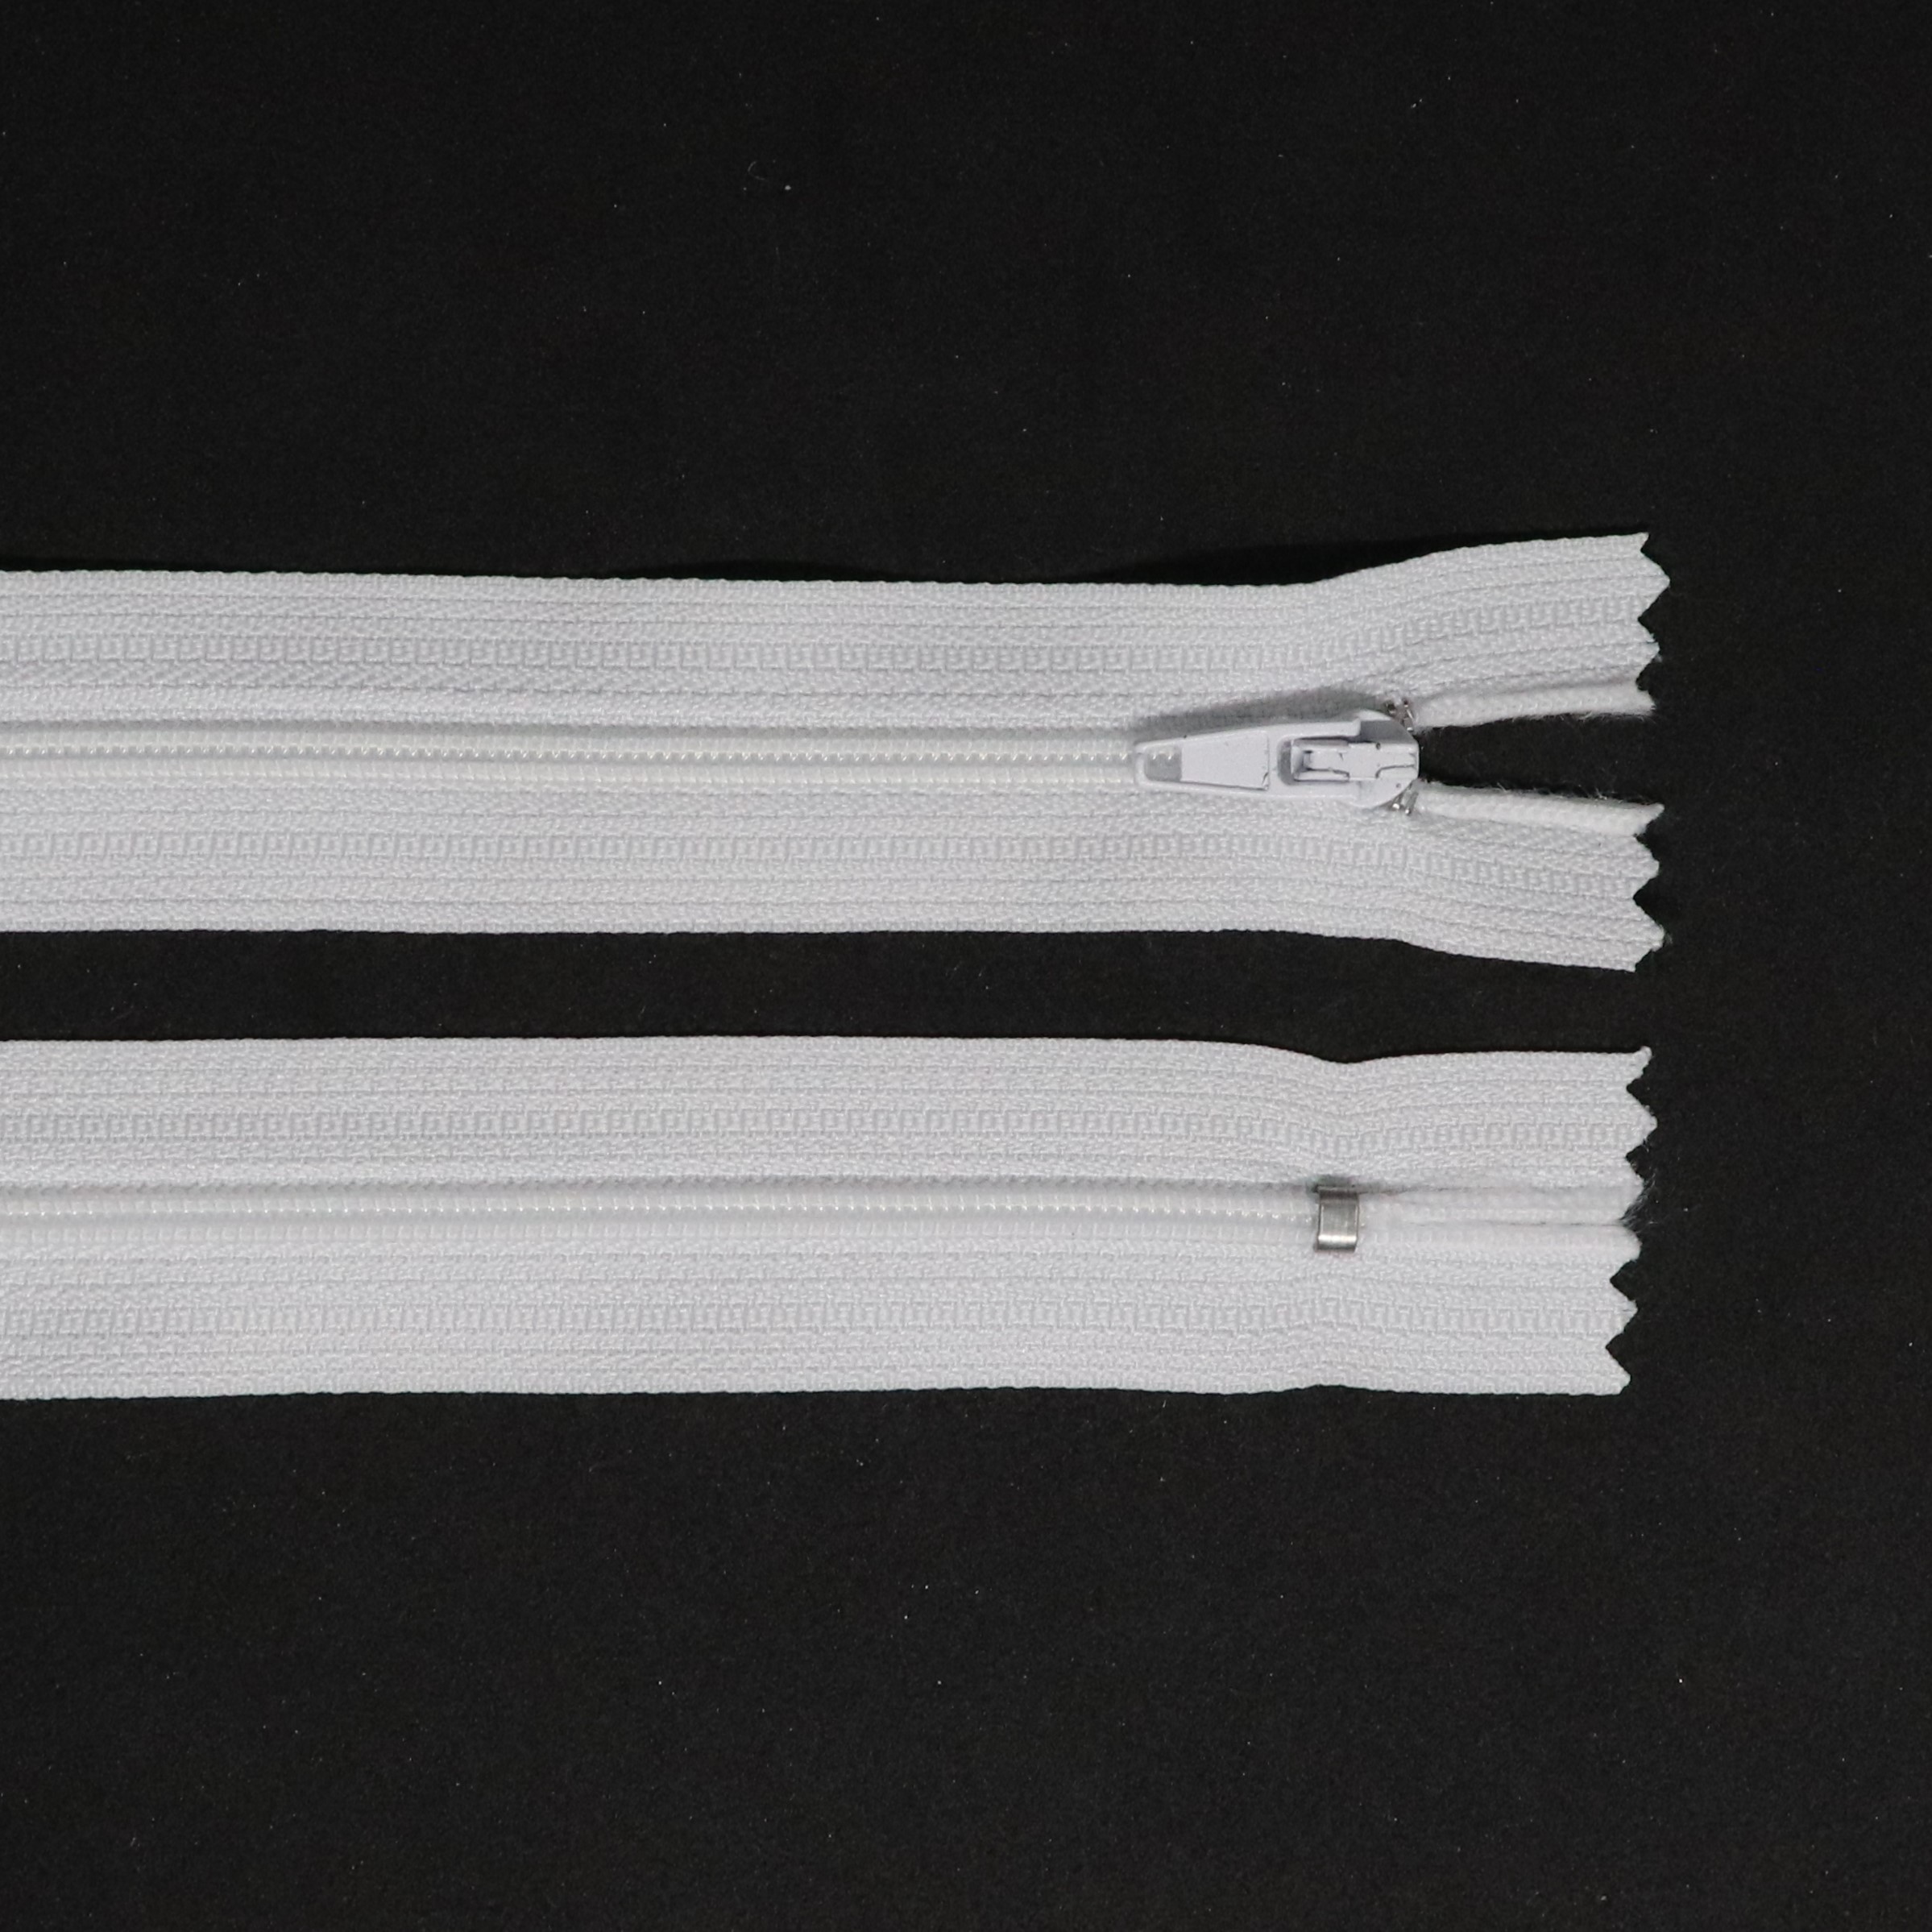 Spirálový zip, šíøe 3 mm, délka 16 cm, bílá - zvìtšit obrázek